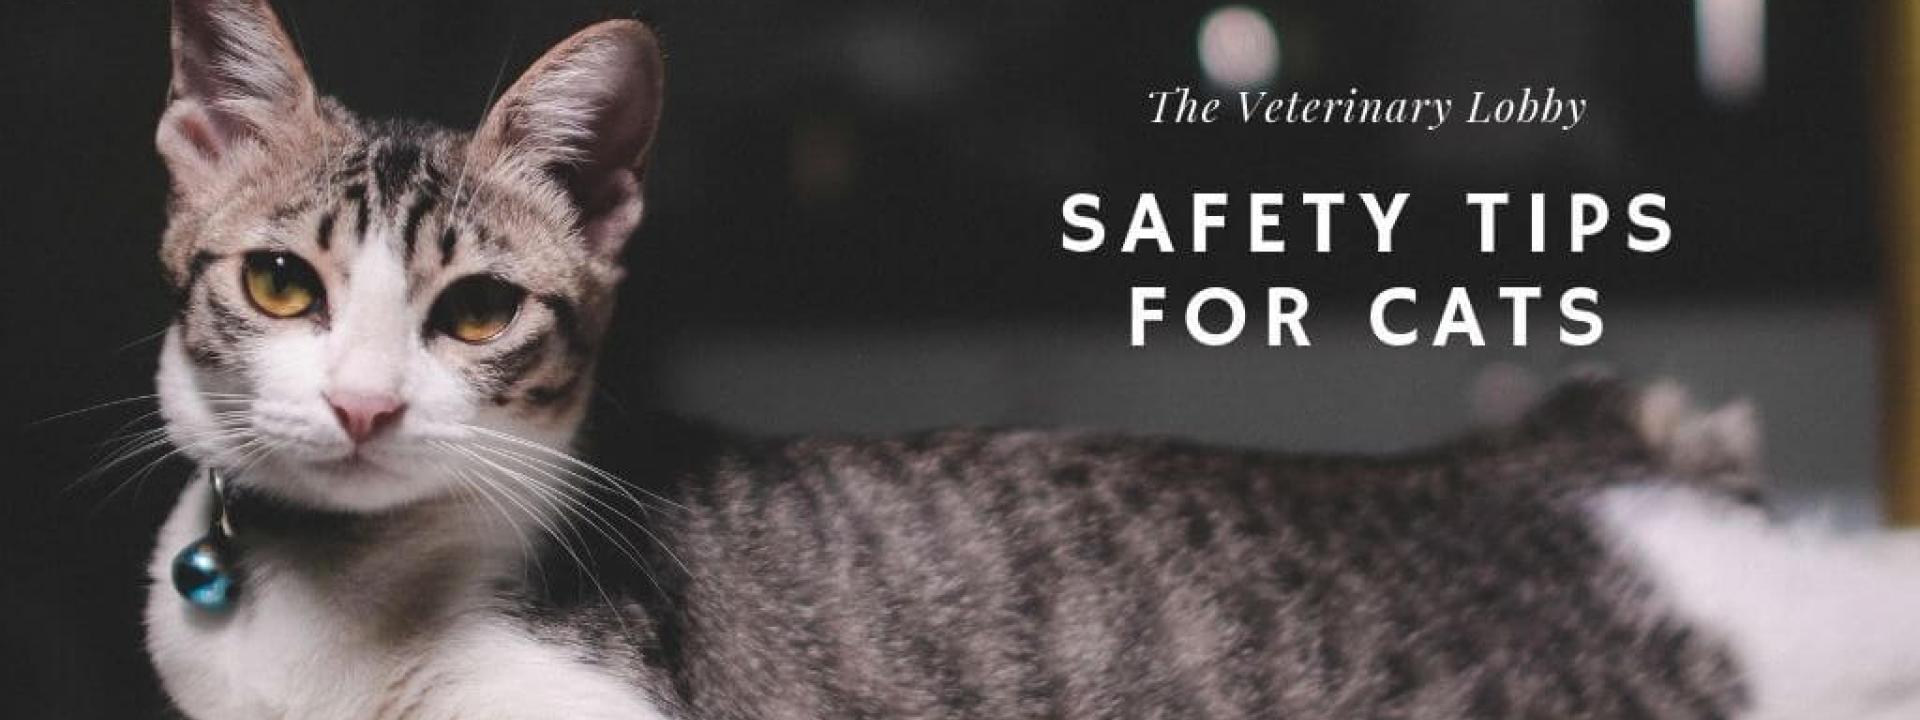 lobby-safety-cats-blog-header.jpg